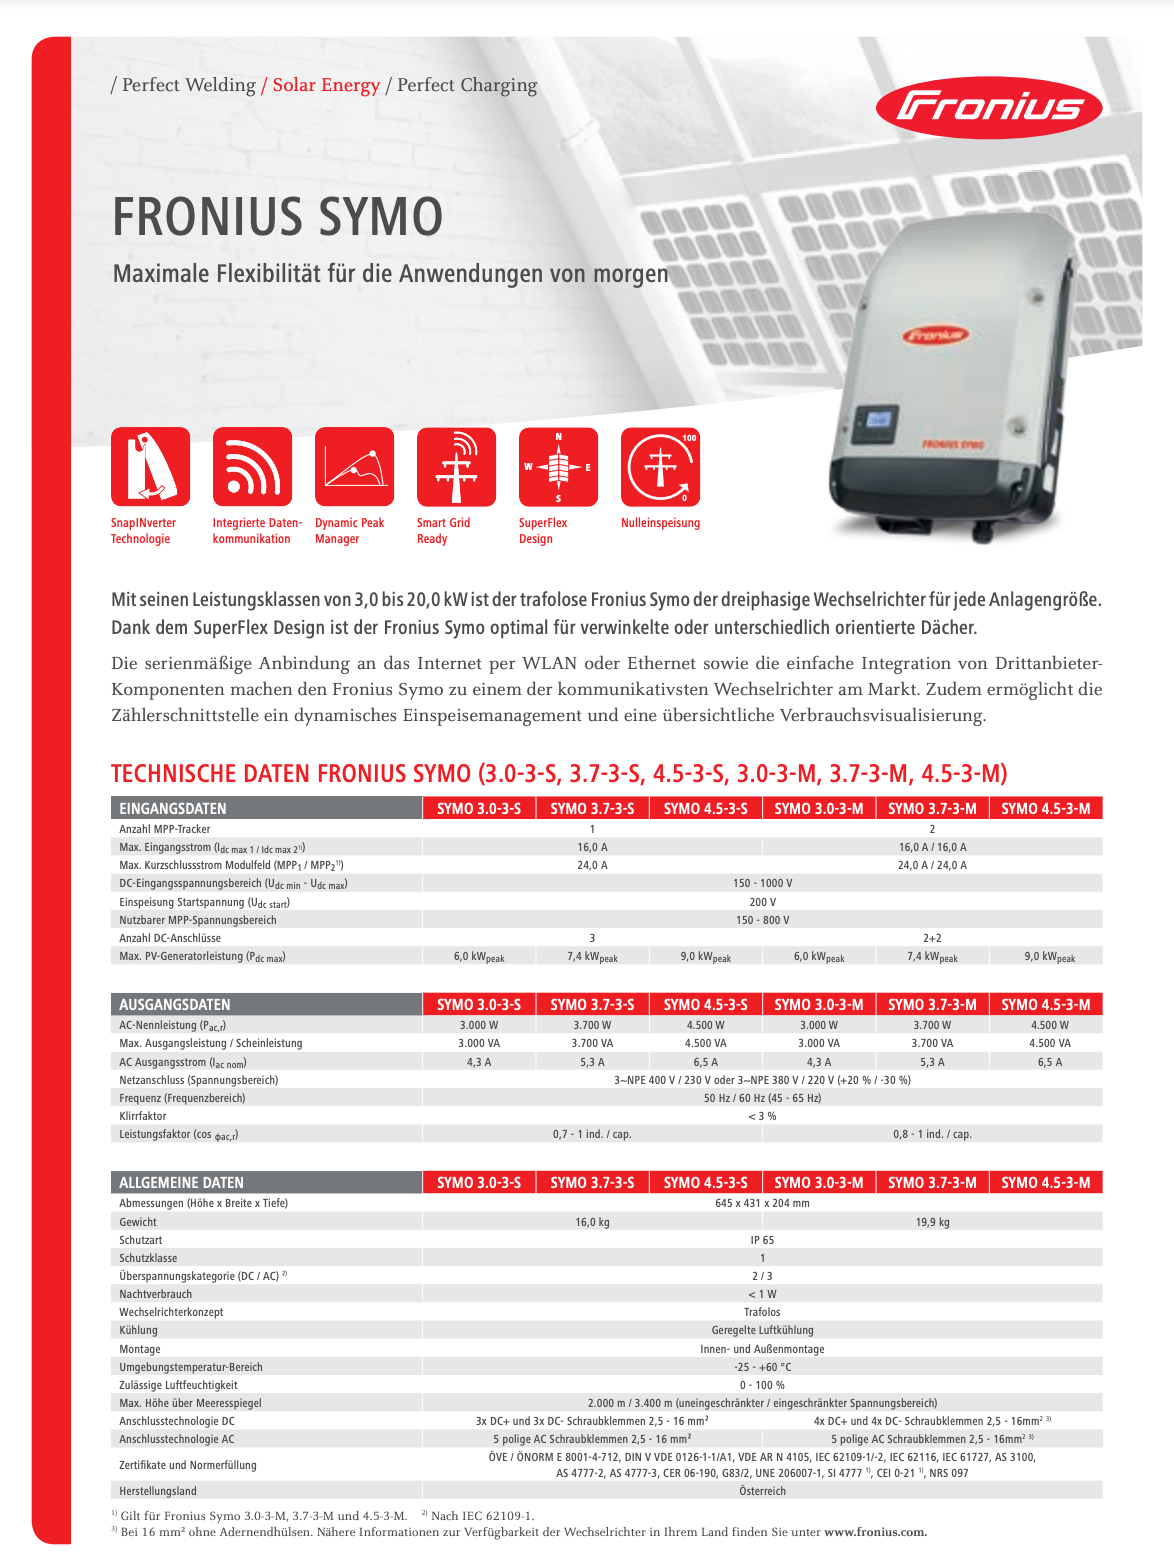 Fronius Symo Hybrid 3.0-3-S Wechselrichter, 5 kW DC-Leistung